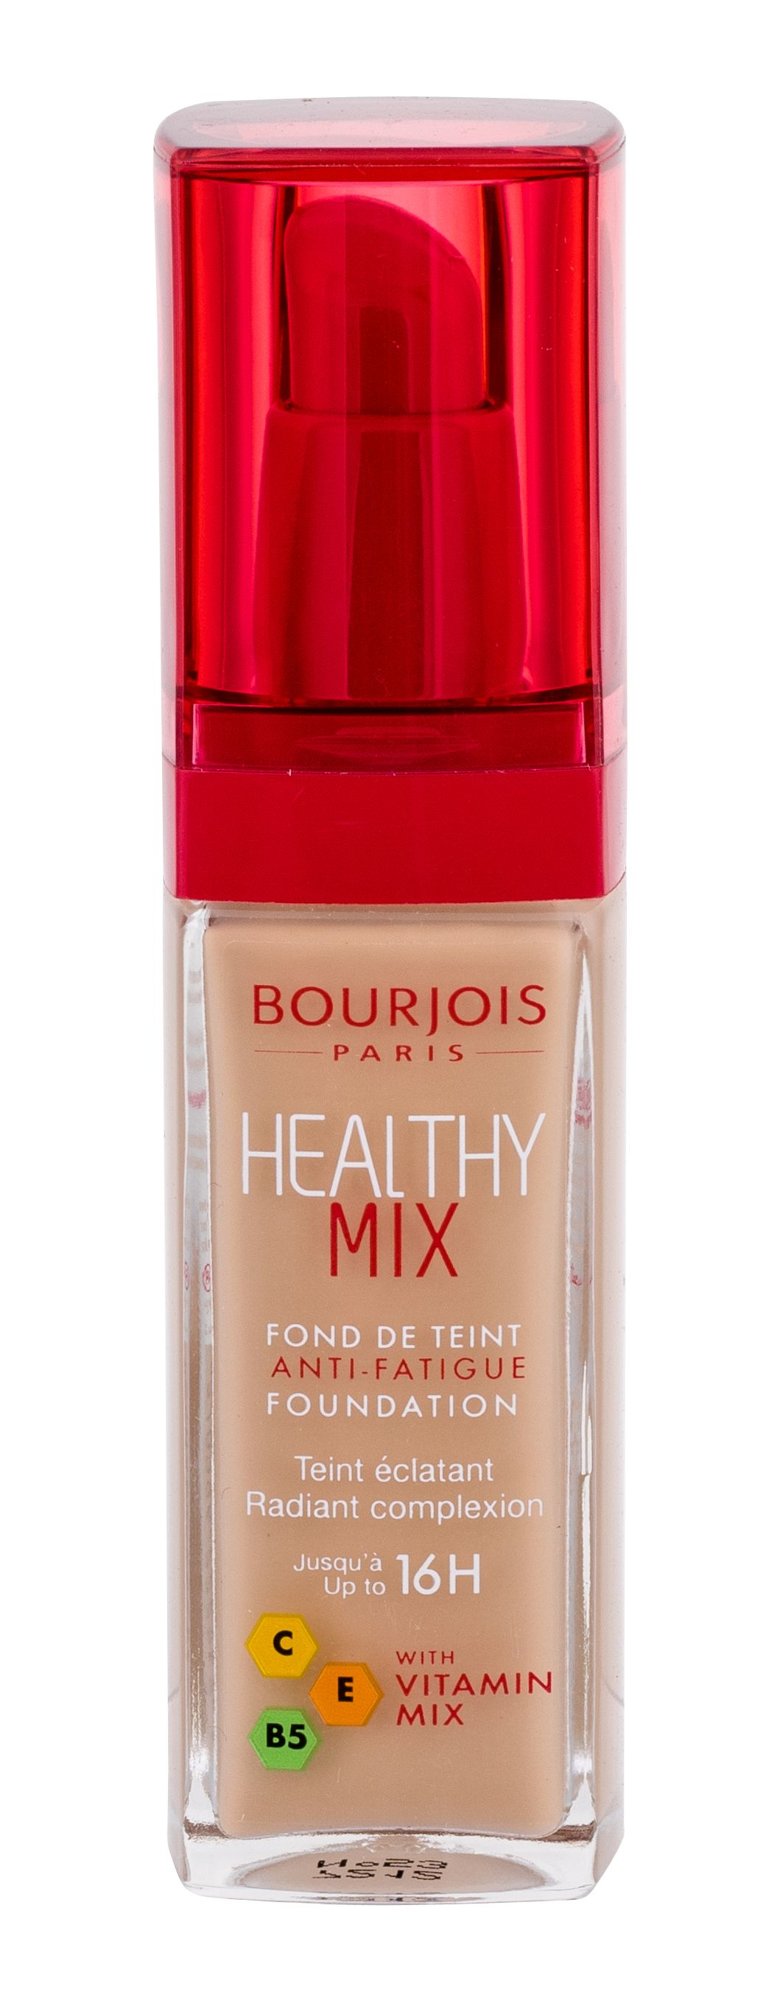 BOURJOIS Paris Healthy Mix Anti-Fatigue Foundation 30ml kosmetika moterims